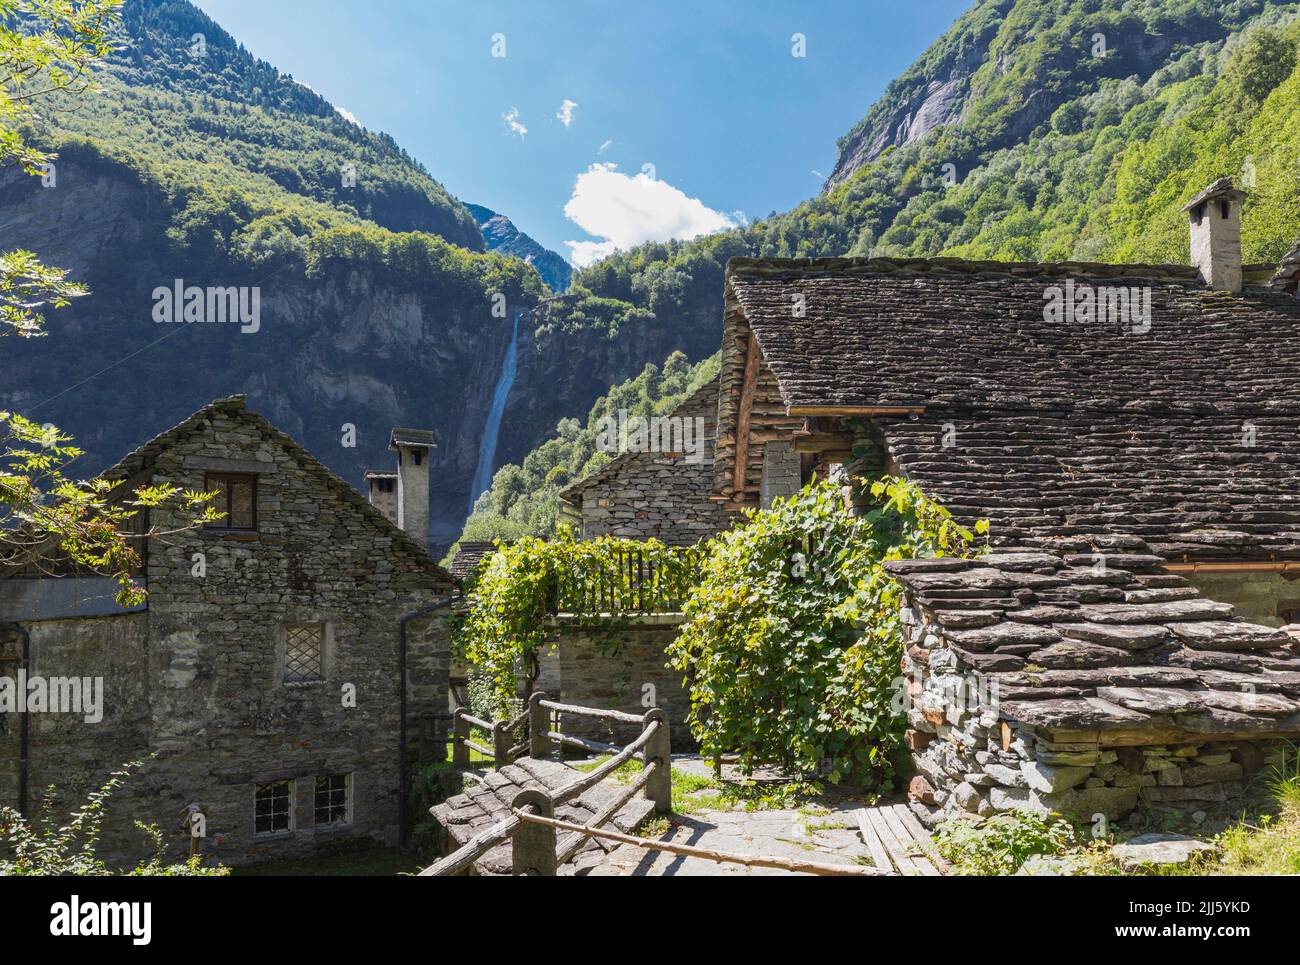 Casas de piedra de estilo antiguo en el pueblo de montaña Foto de stock